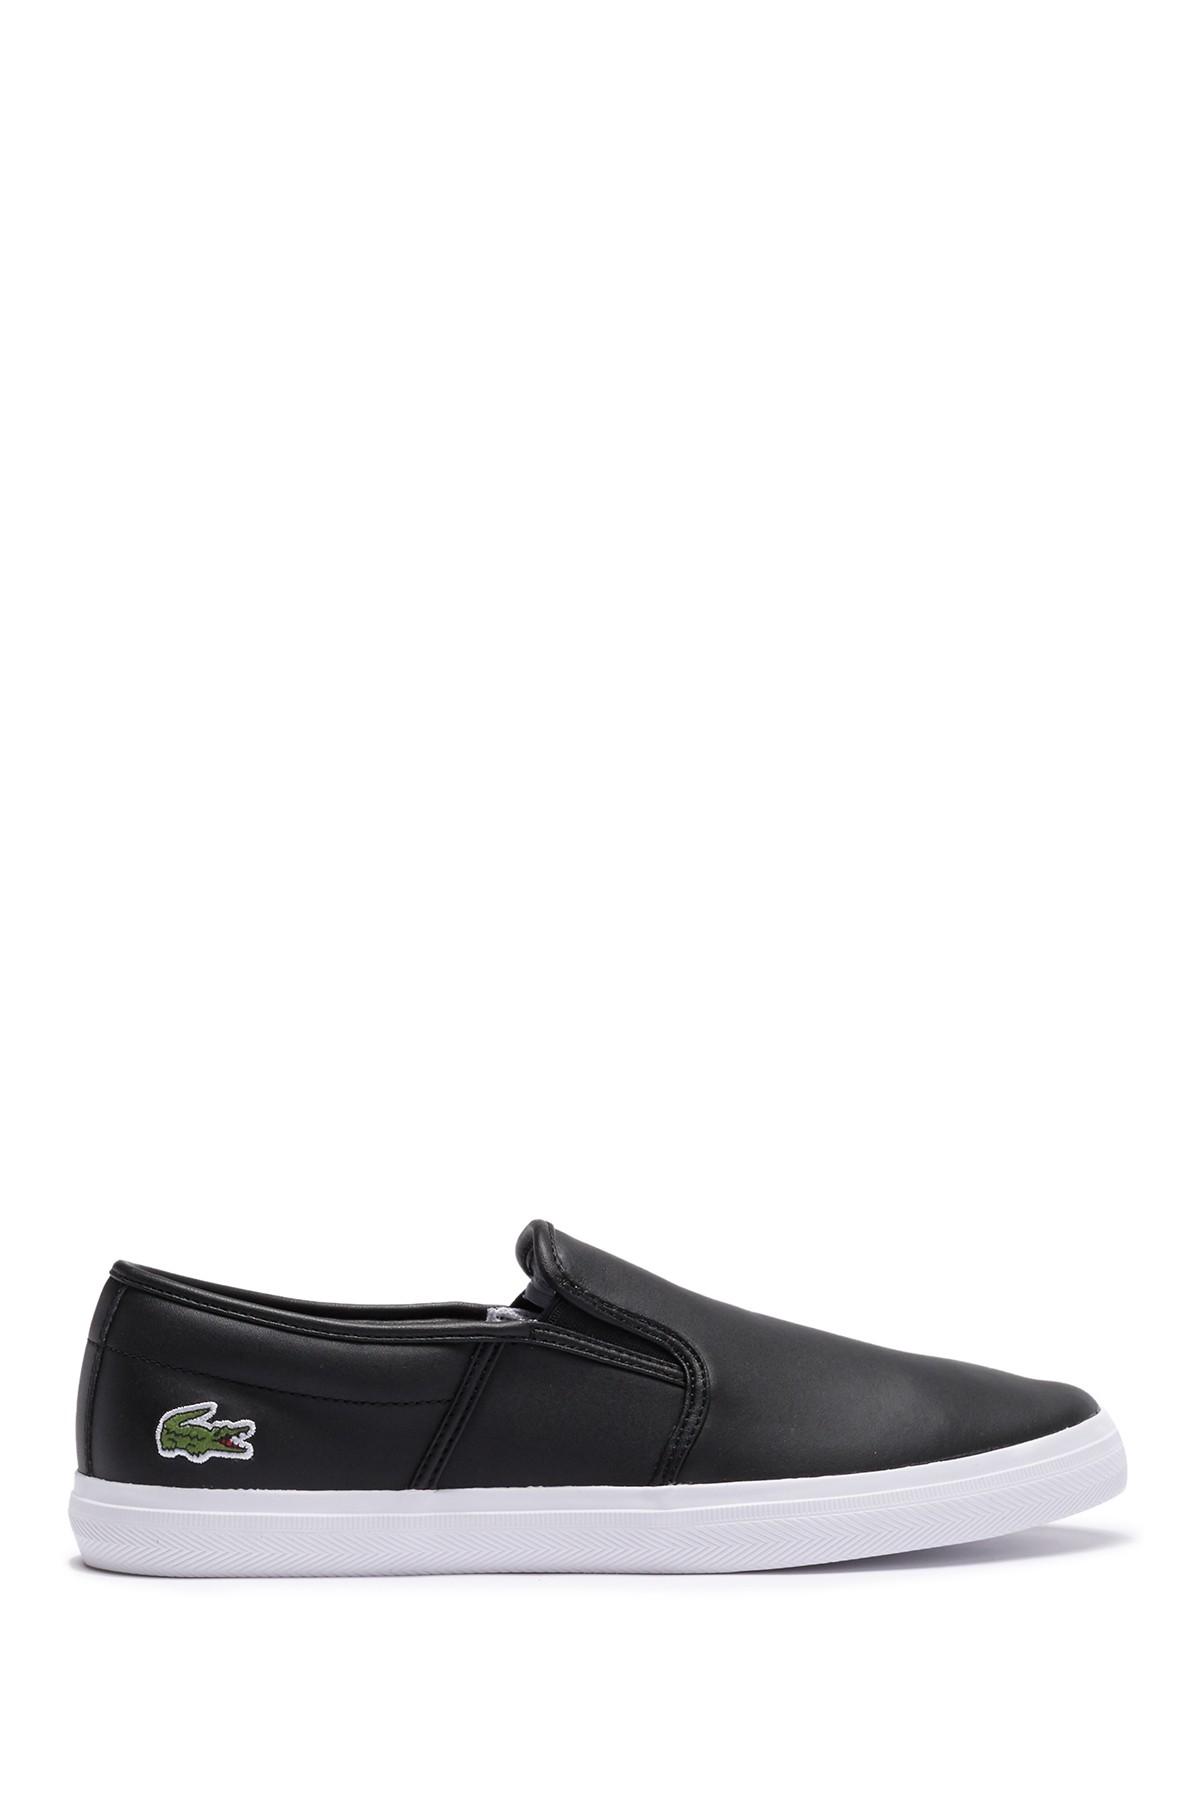 Lacoste Tatalya Leather Slip-on Sneaker in Black/White (Black) for Men |  Lyst